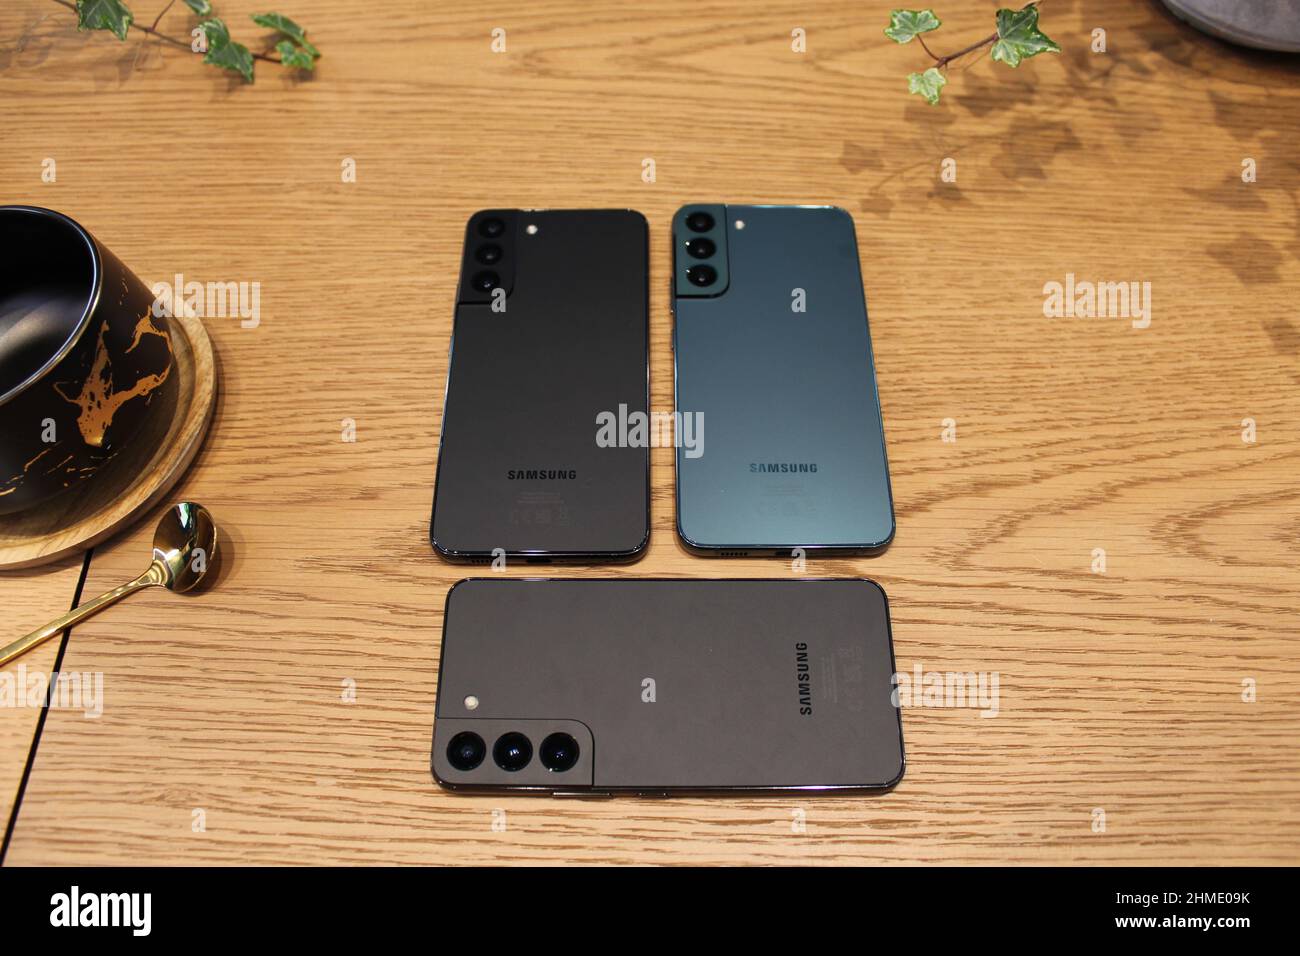 La nuova serie di telefoni Samsung Galaxy S22 che sono stati svelati dalla società. Data foto: Mercoledì 9 febbraio 2022. Foto Stock